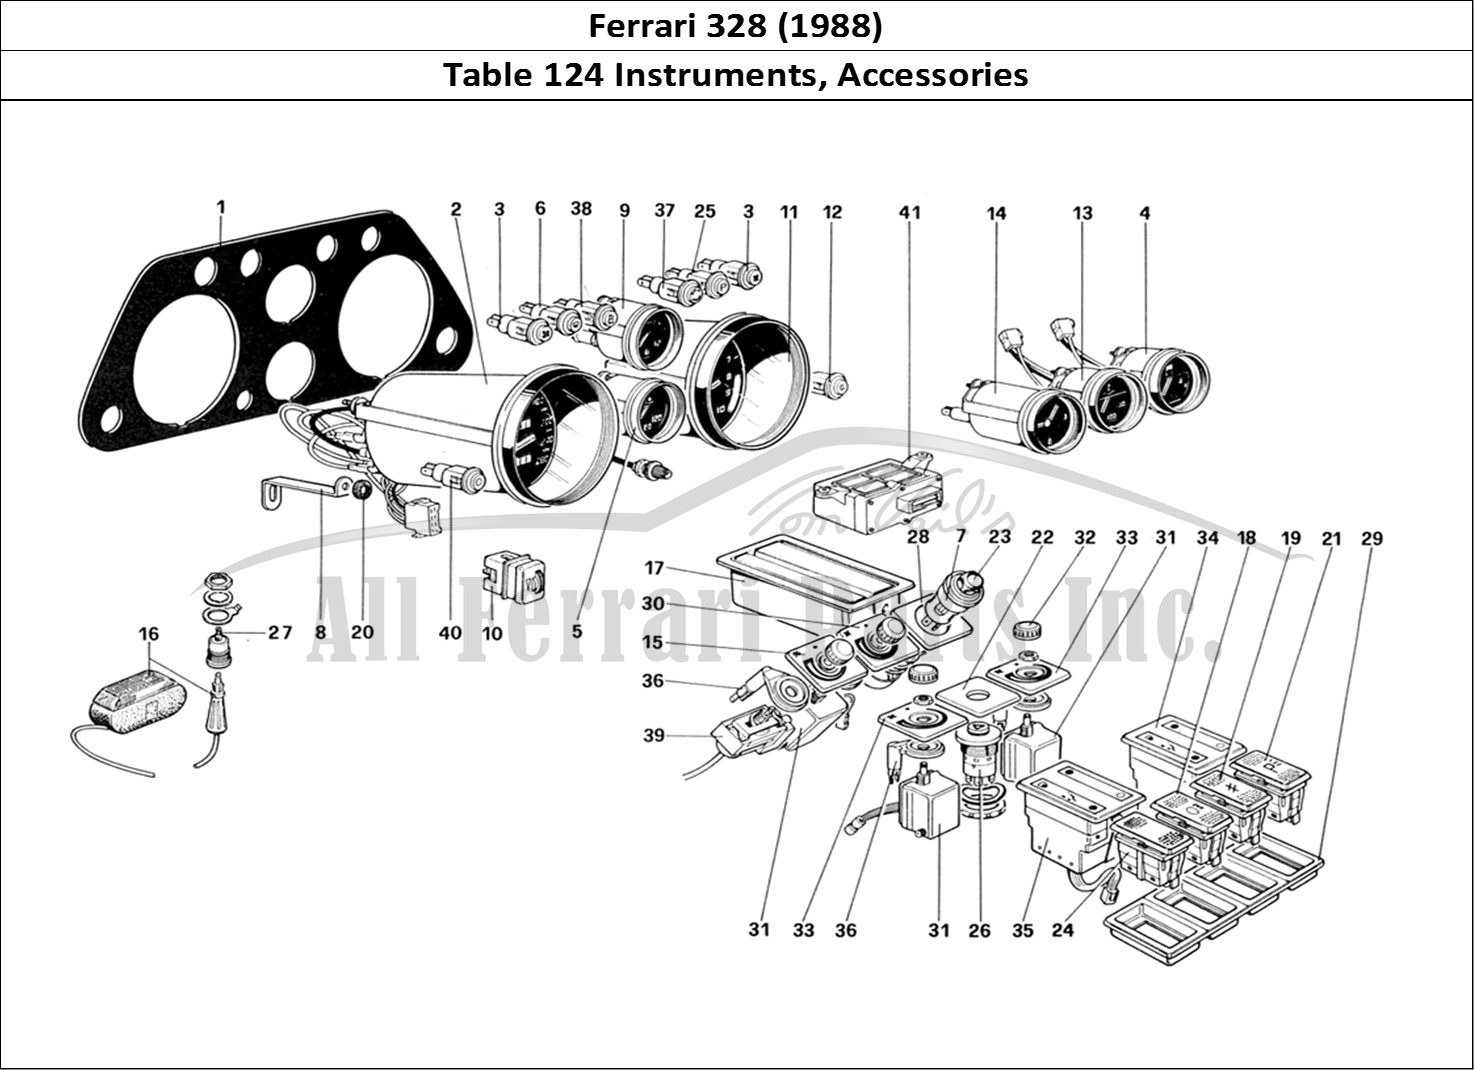 Ferrari Parts Ferrari 328 (1988) Page 124 Instruments and Accessori